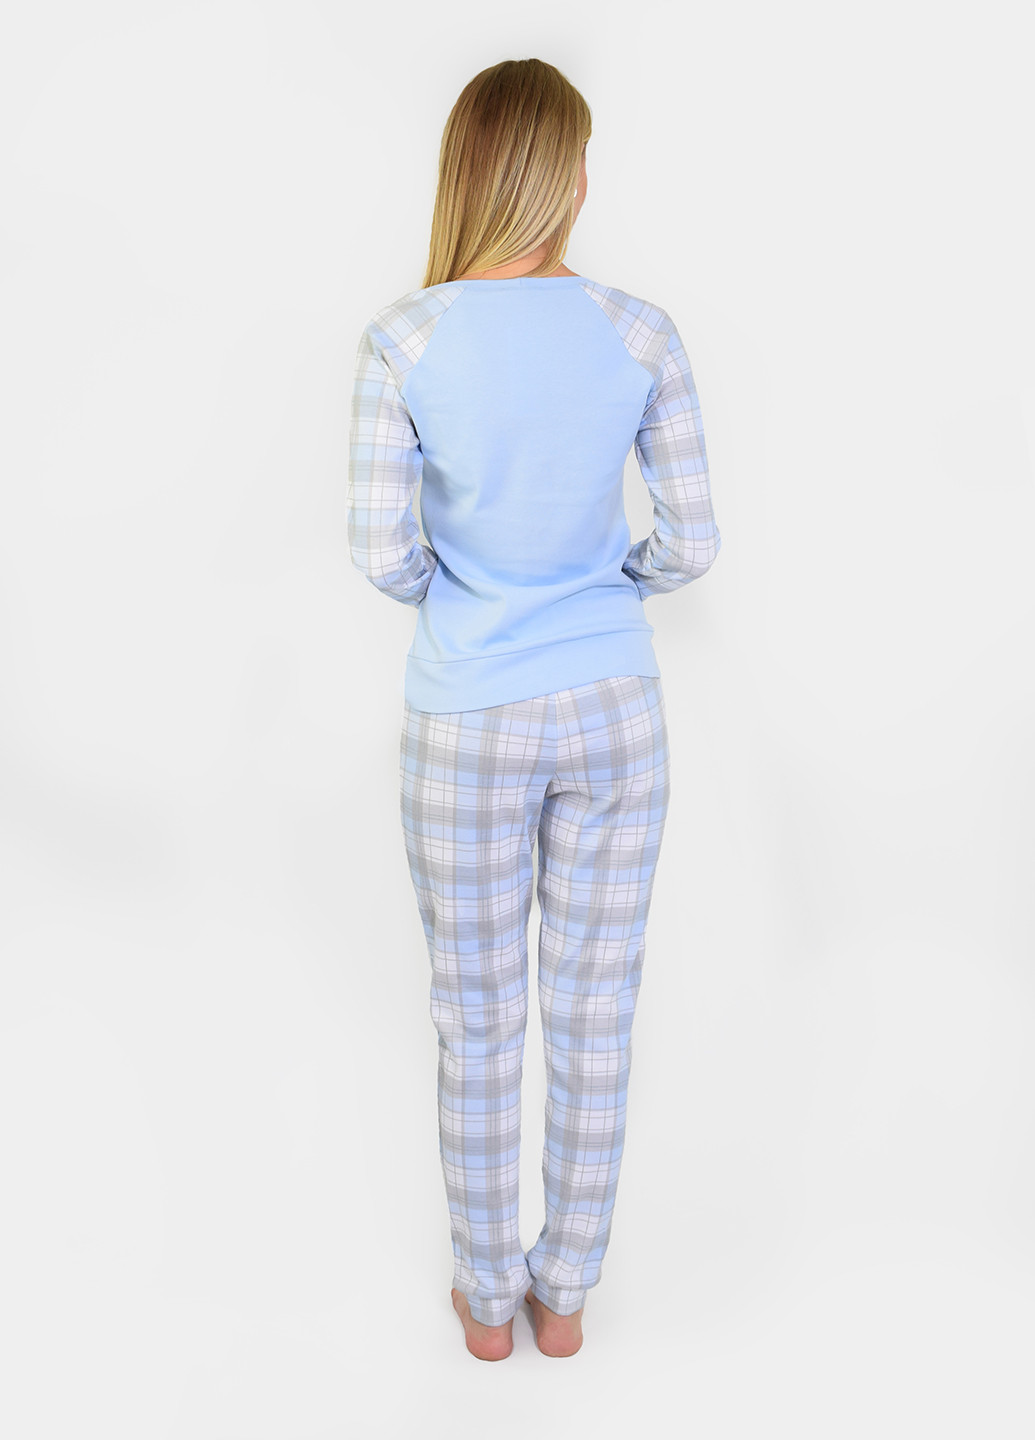 Светло-голубая всесезон пижама (лонгслив, брюки) лонгслив + брюки NEL